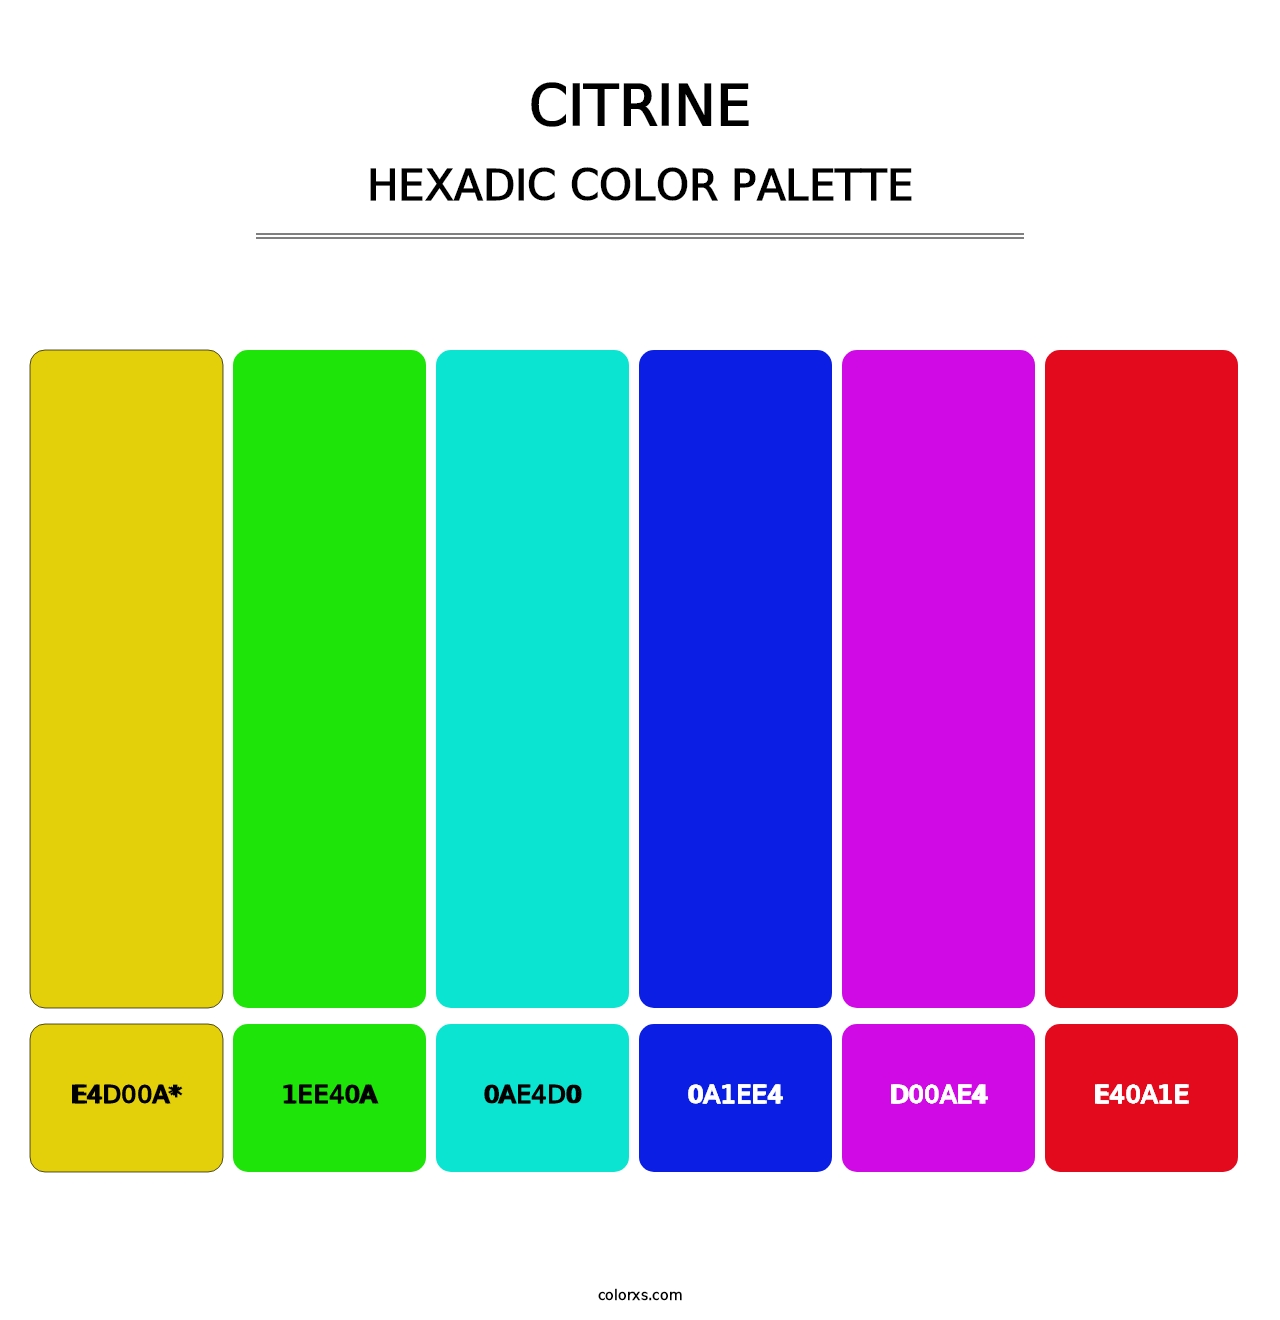 Citrine - Hexadic Color Palette